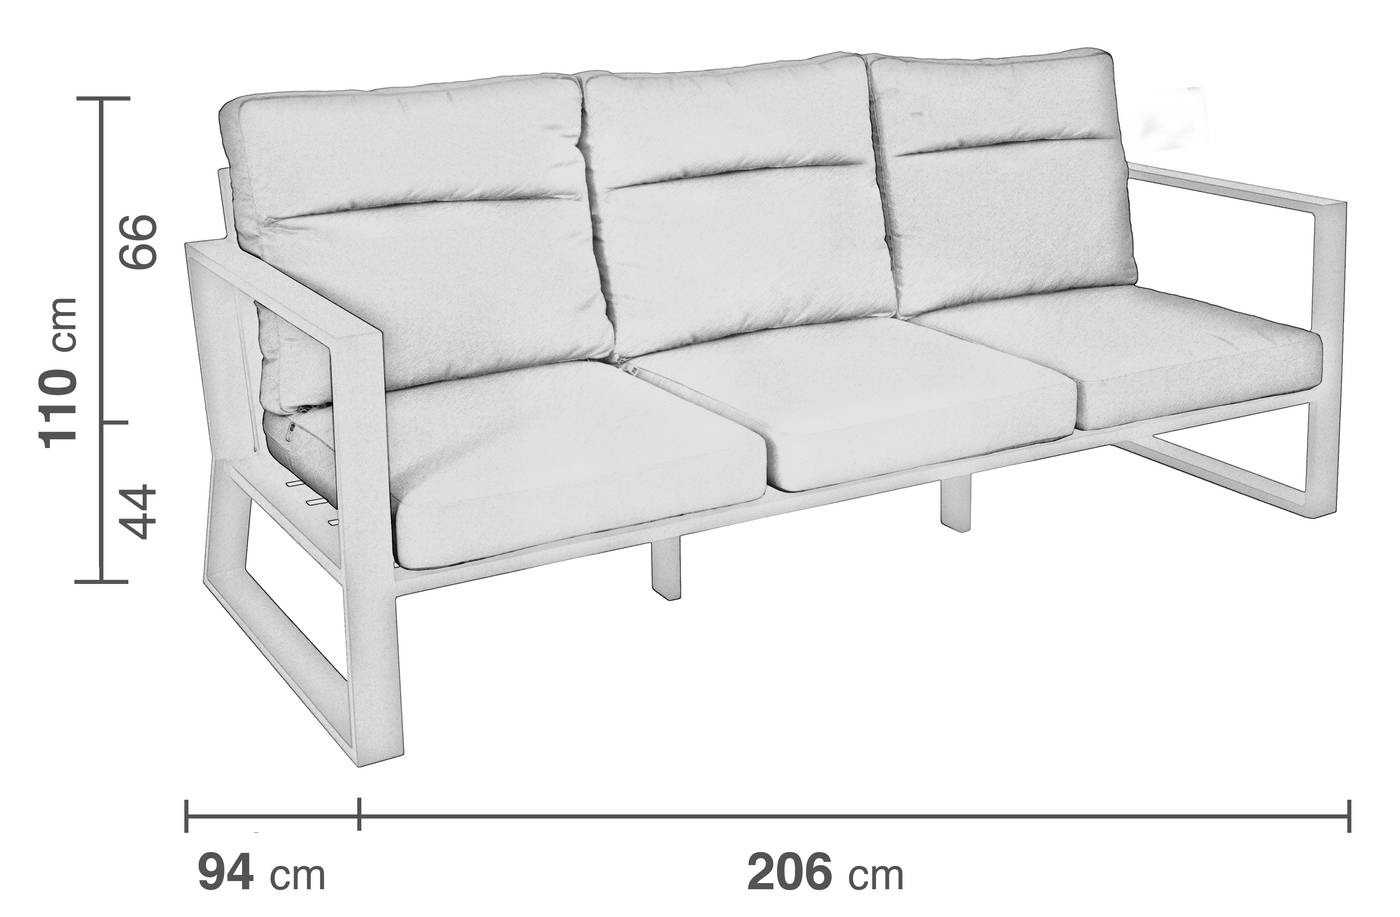 Sofá Aluminio Bolonia-39 - Sofá relax lujo 3 plazas, con respaldos reclinables. Fabricado de aluminio en color blanco, antracita o bronce.